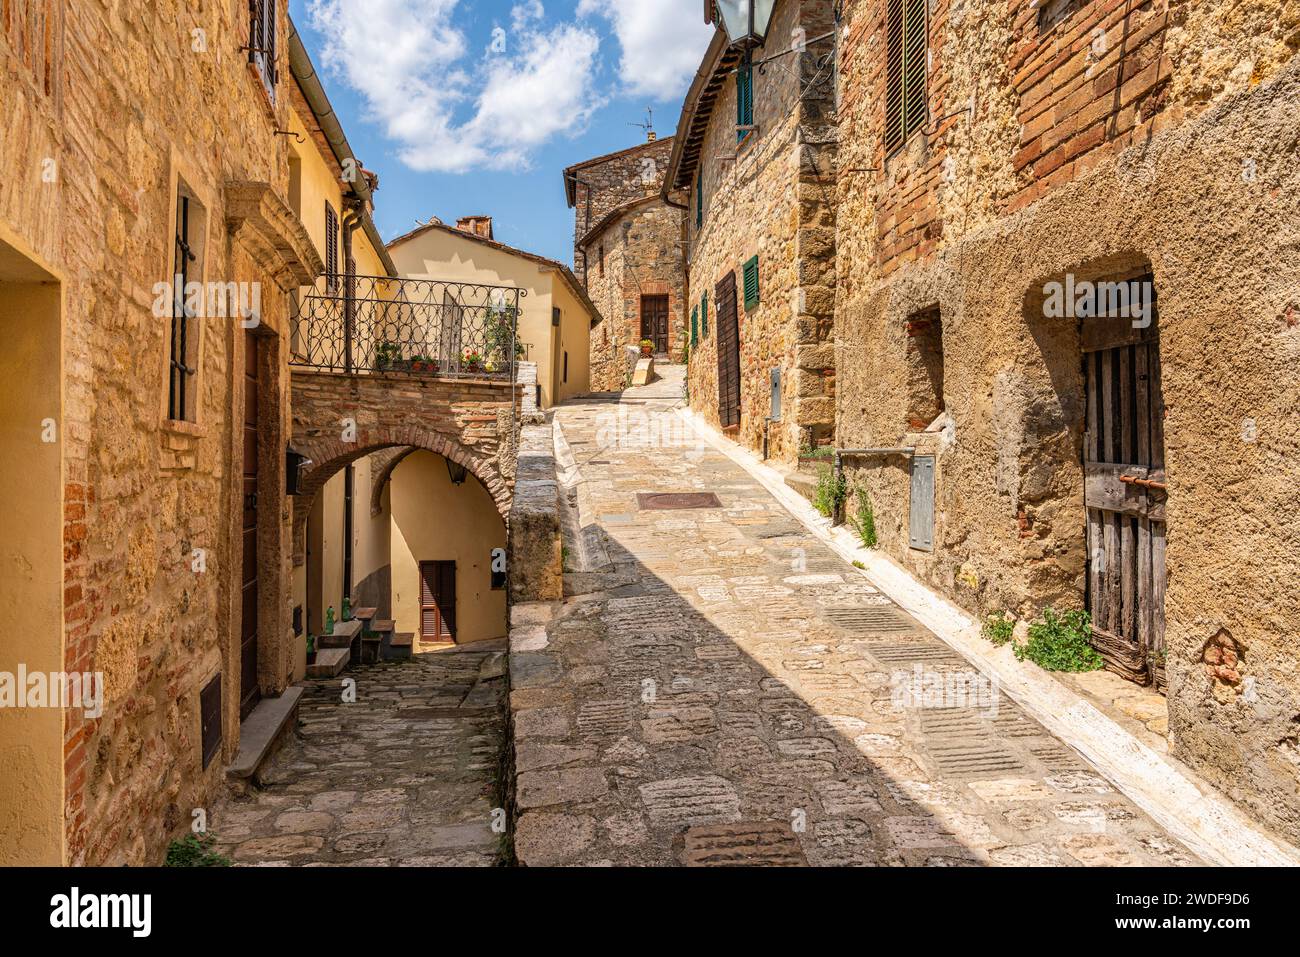 Cetona, ein wunderschönes toskanisches Dorf in der Provinz Siena. Toskana, Italien. Stockfoto